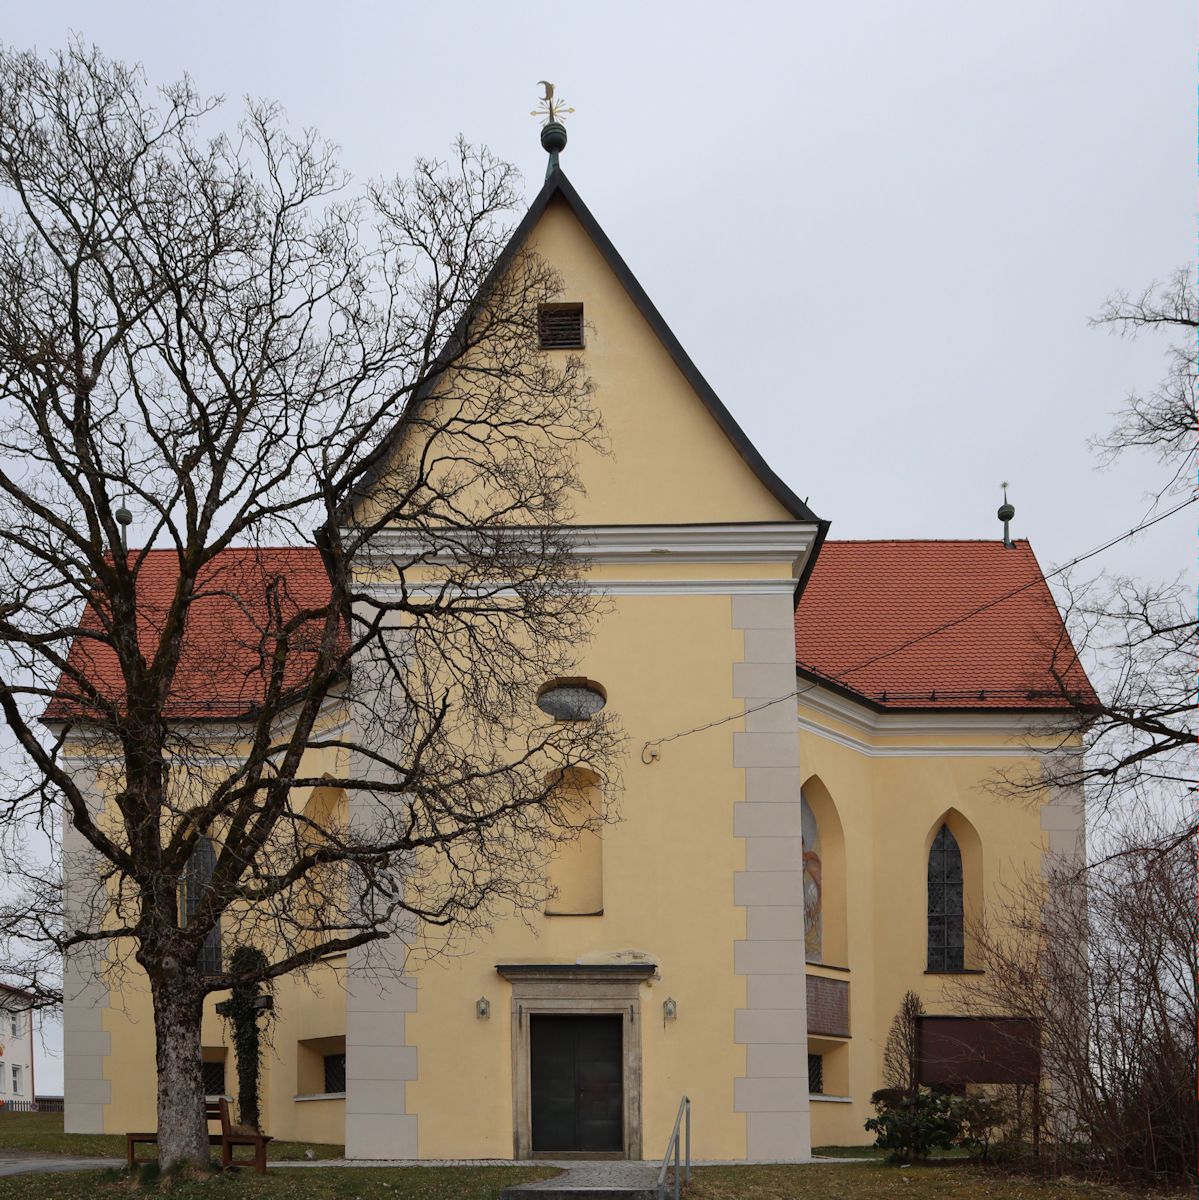 Pfarrkirche in Patriching - dem heutigen Stadtteil von Passau